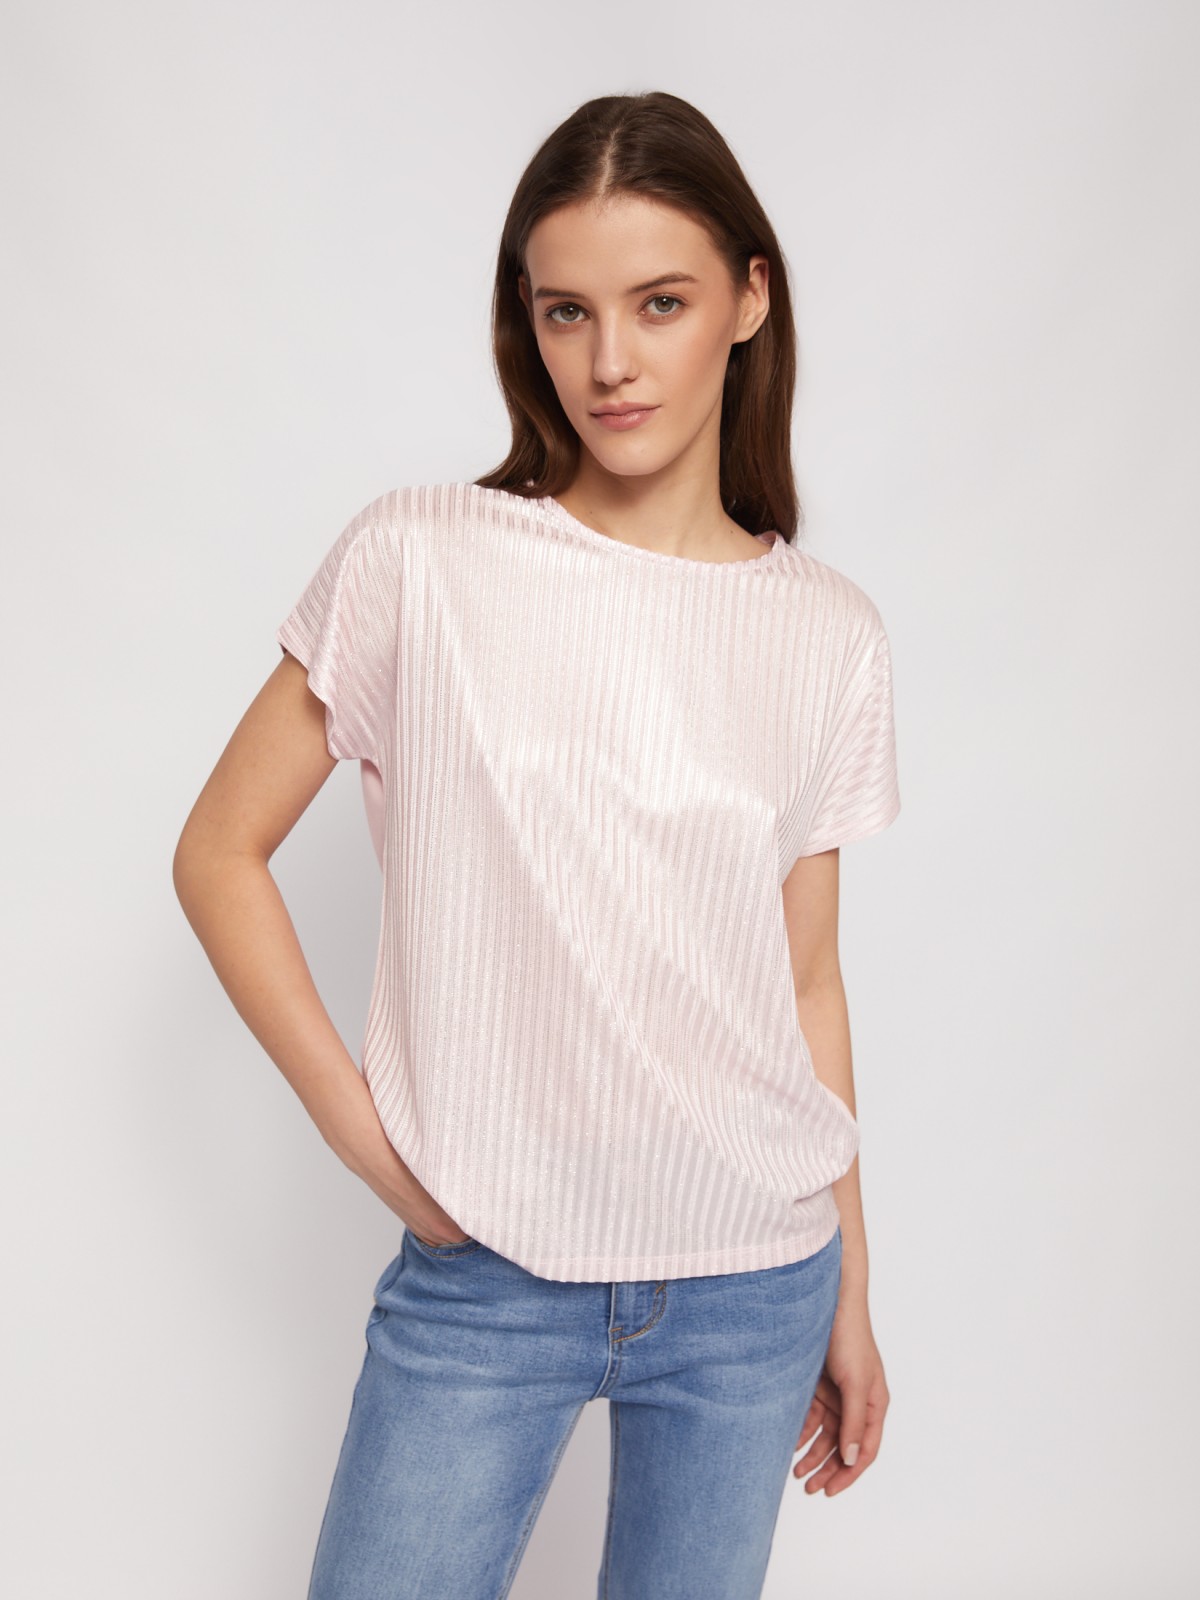 Трикотажный комбинированный топ-блузка с блеском zolla 024223226033, цвет розовый, размер XS - фото 5